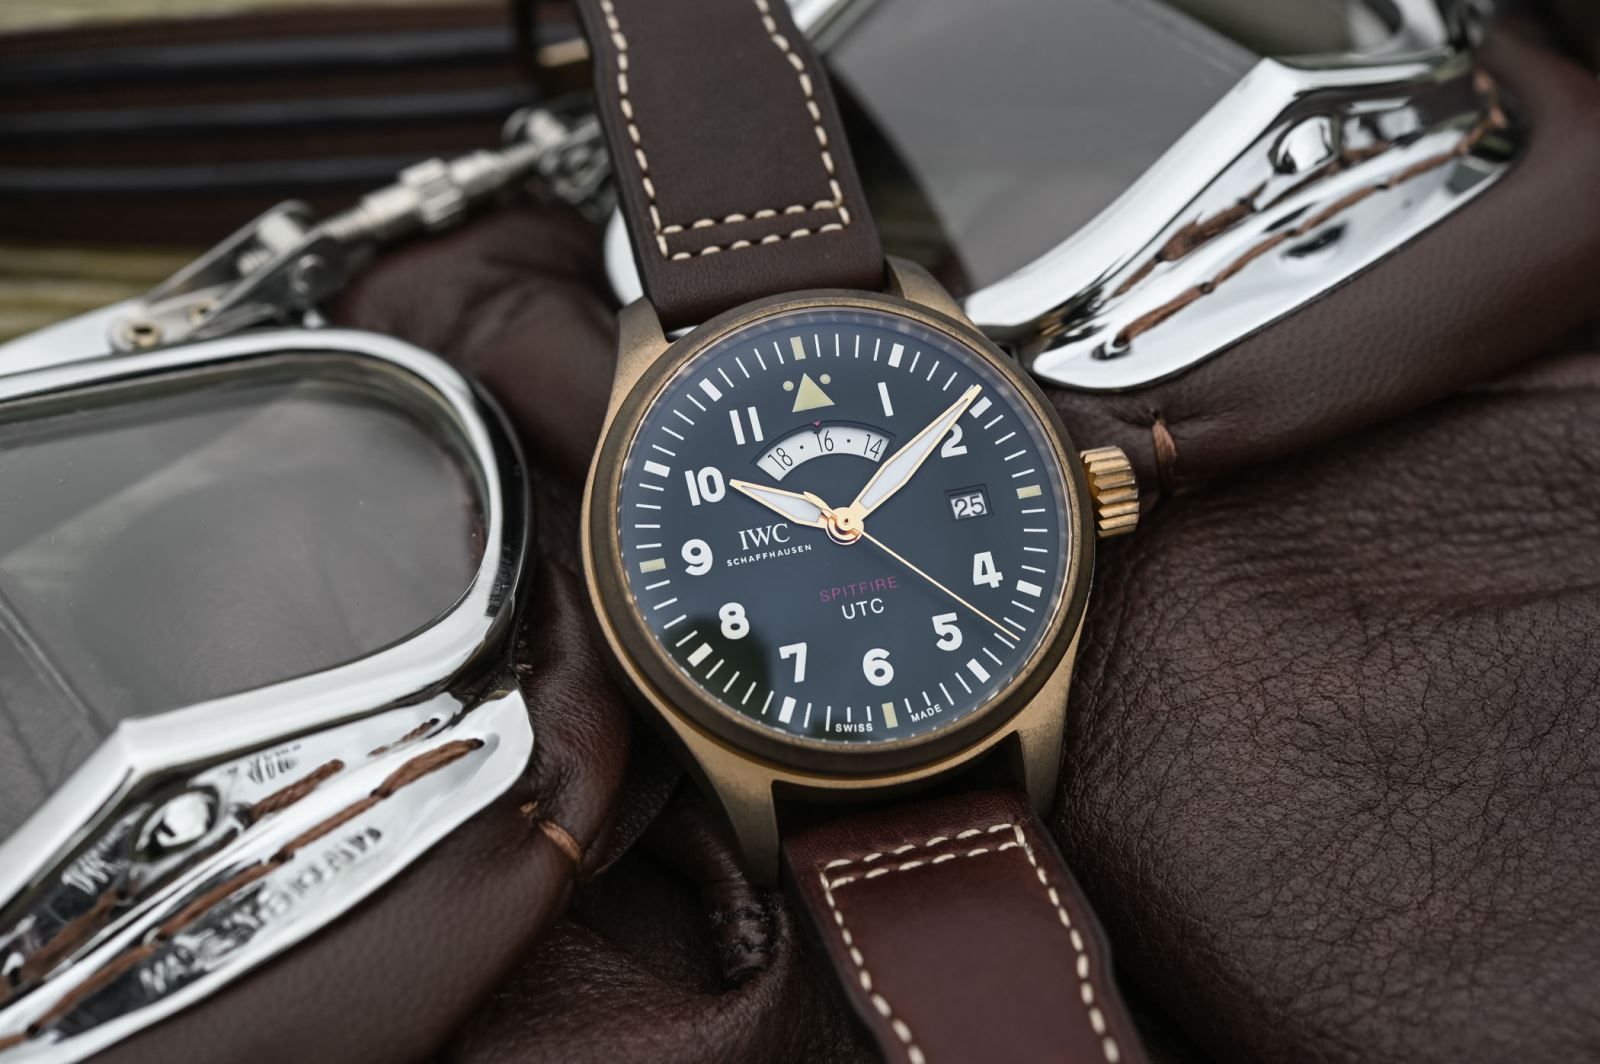 Đồng hồ phi công IWC ’s Pilot UTC Spitfire Edition “MJ271”, tái hiện một mô hình đồng hồ phi công được sản xuất vào năm 1998.